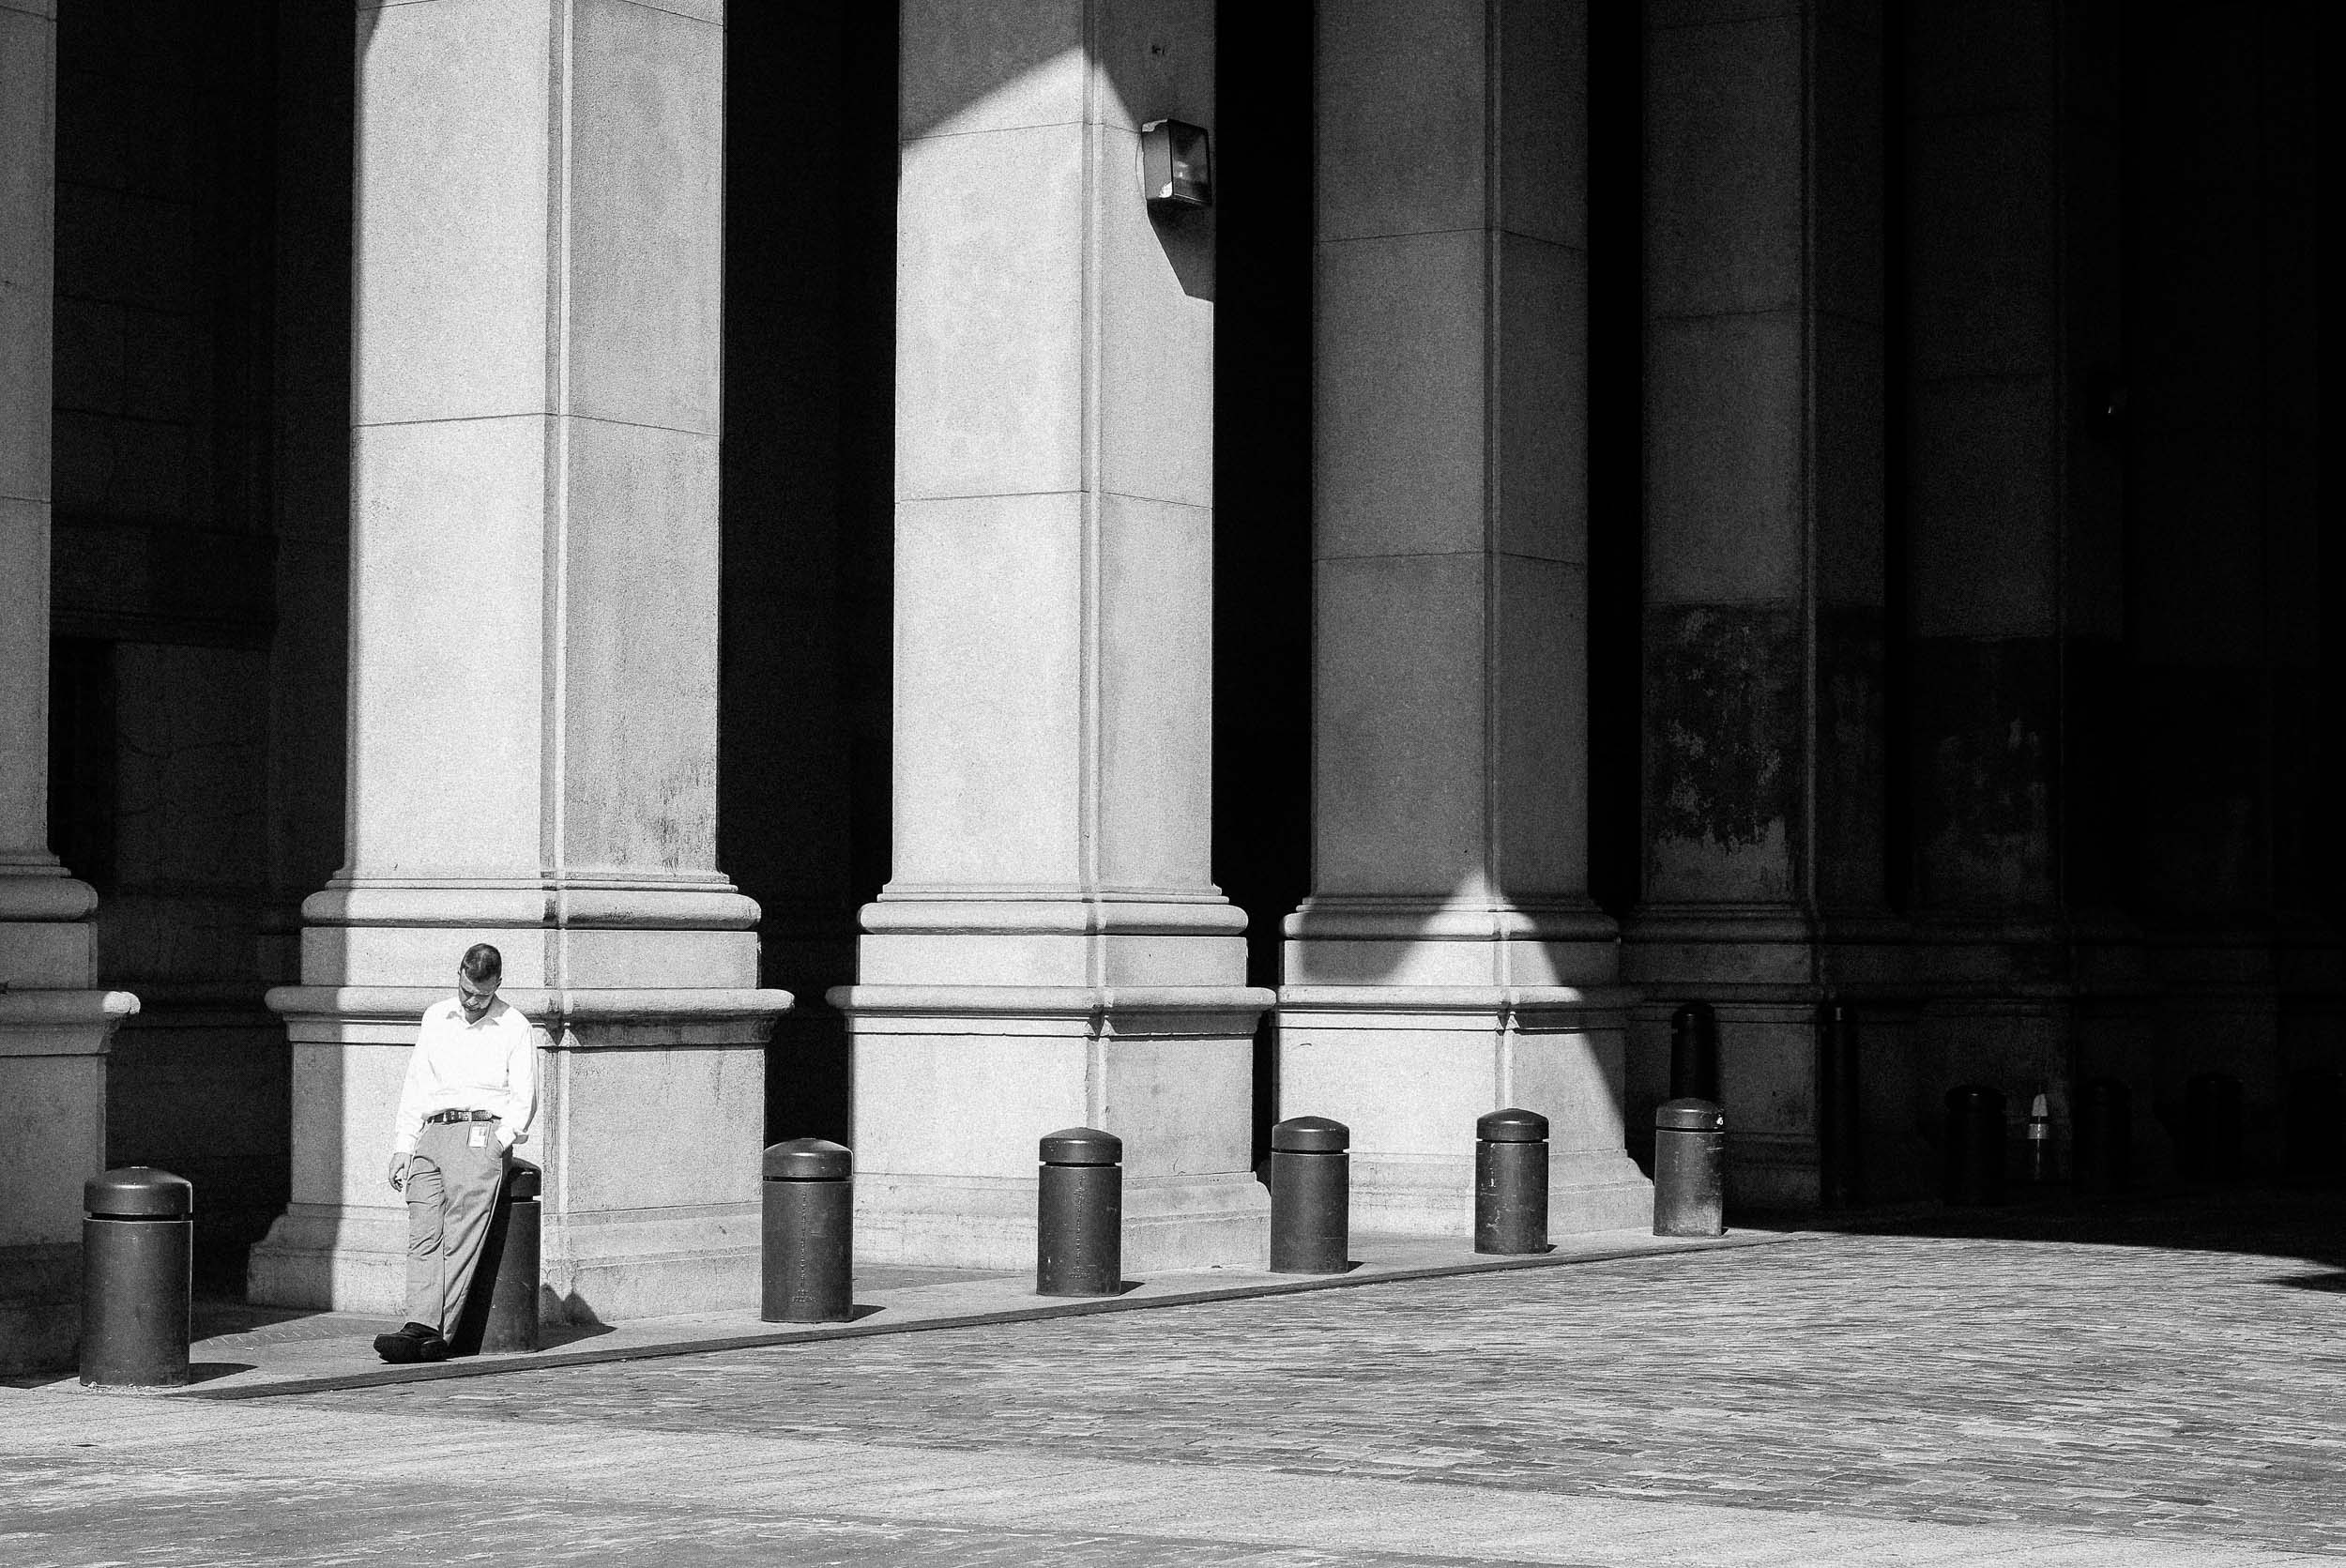 Man taking a smoking break near City Hall New York, NY